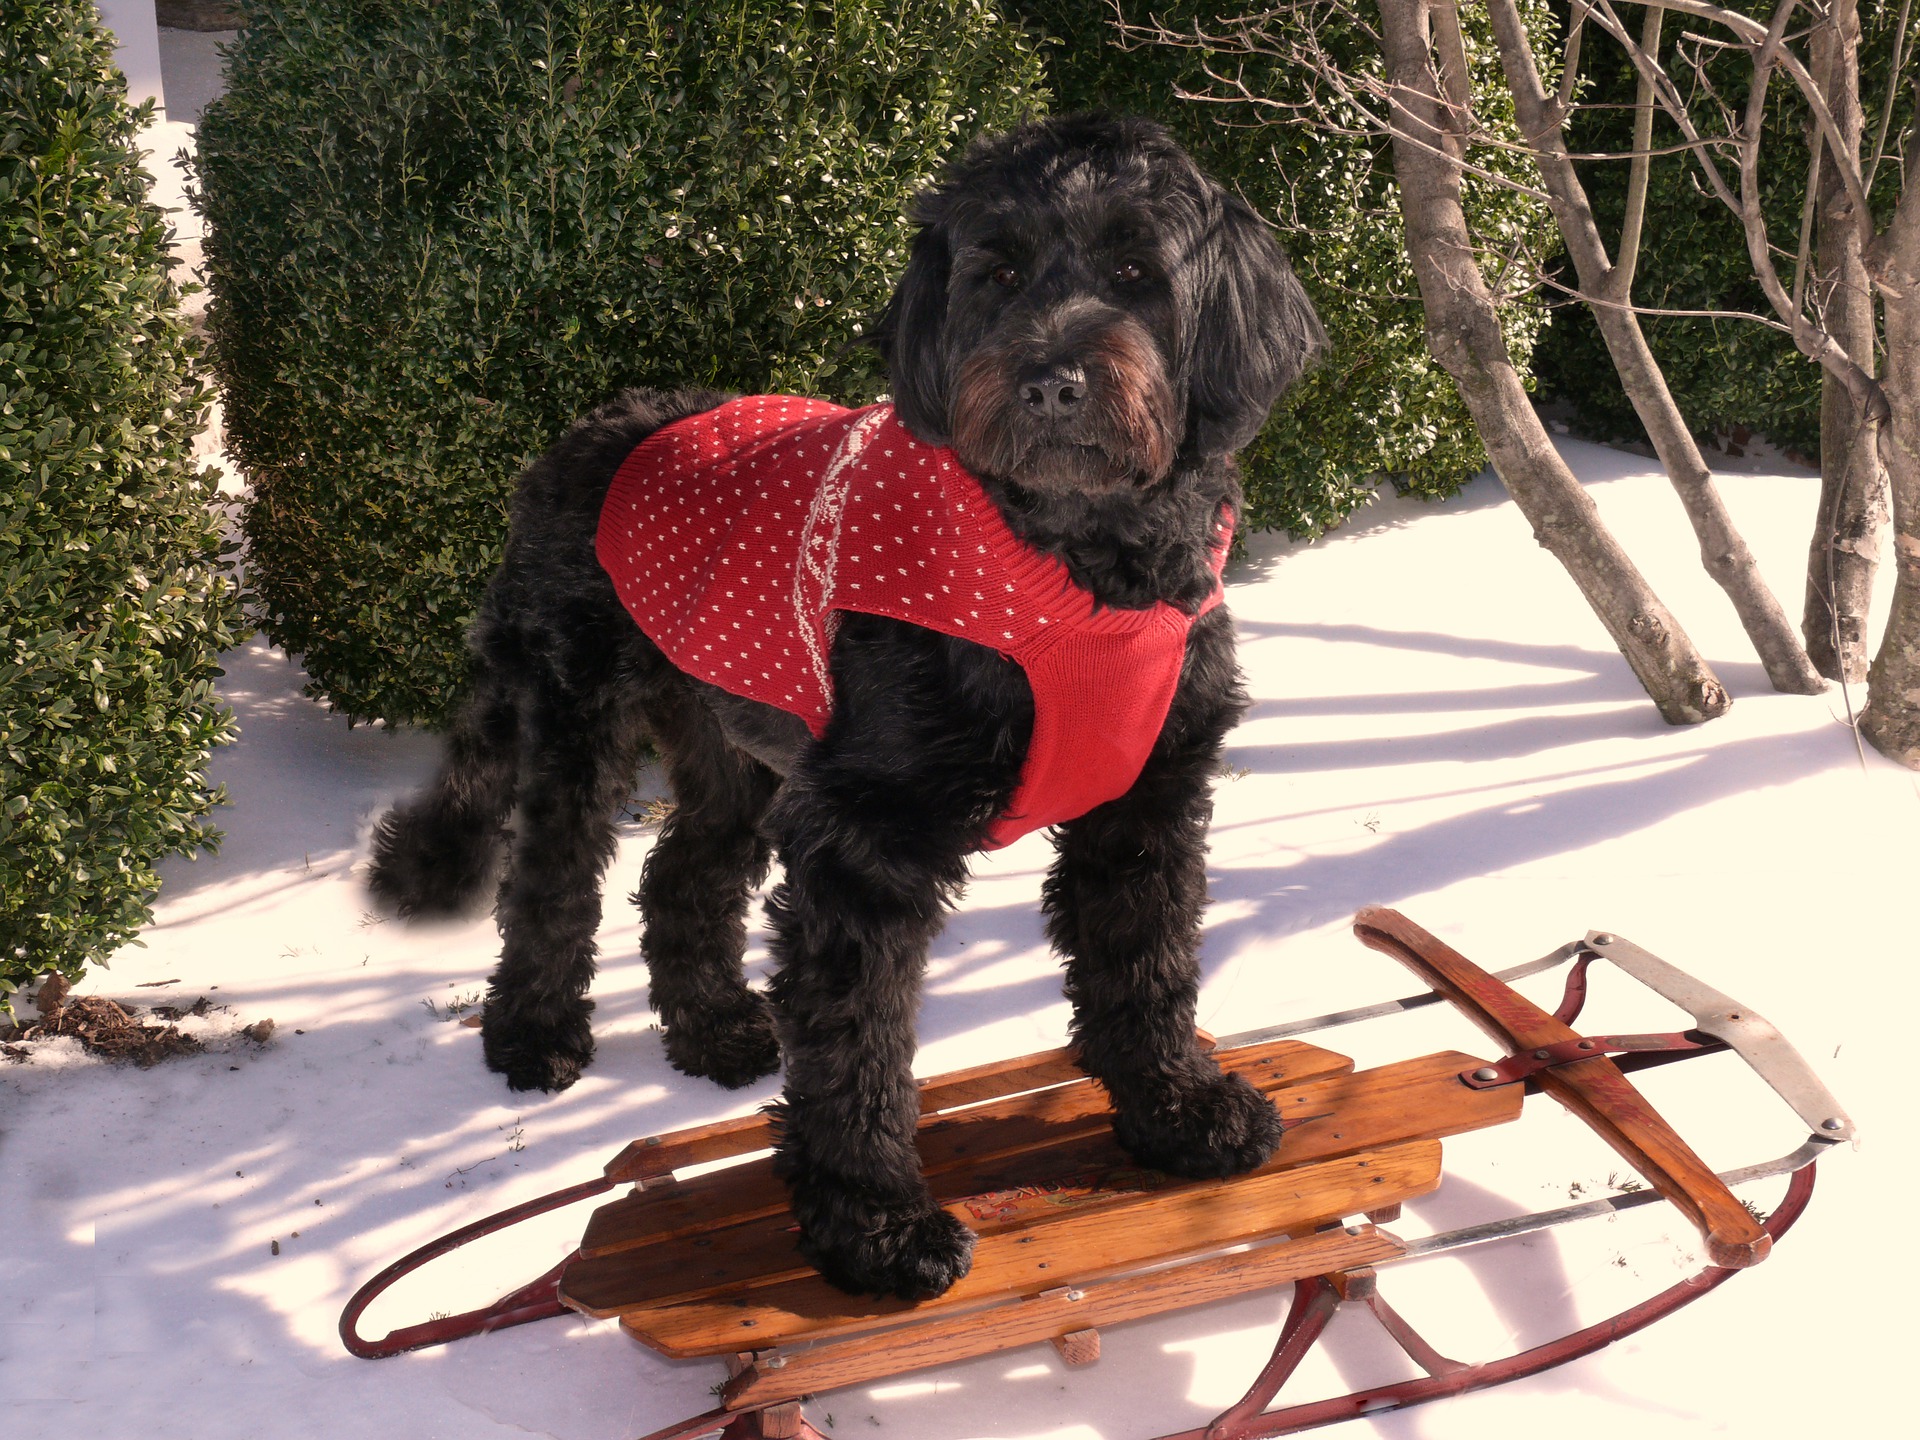 a dog on a sled